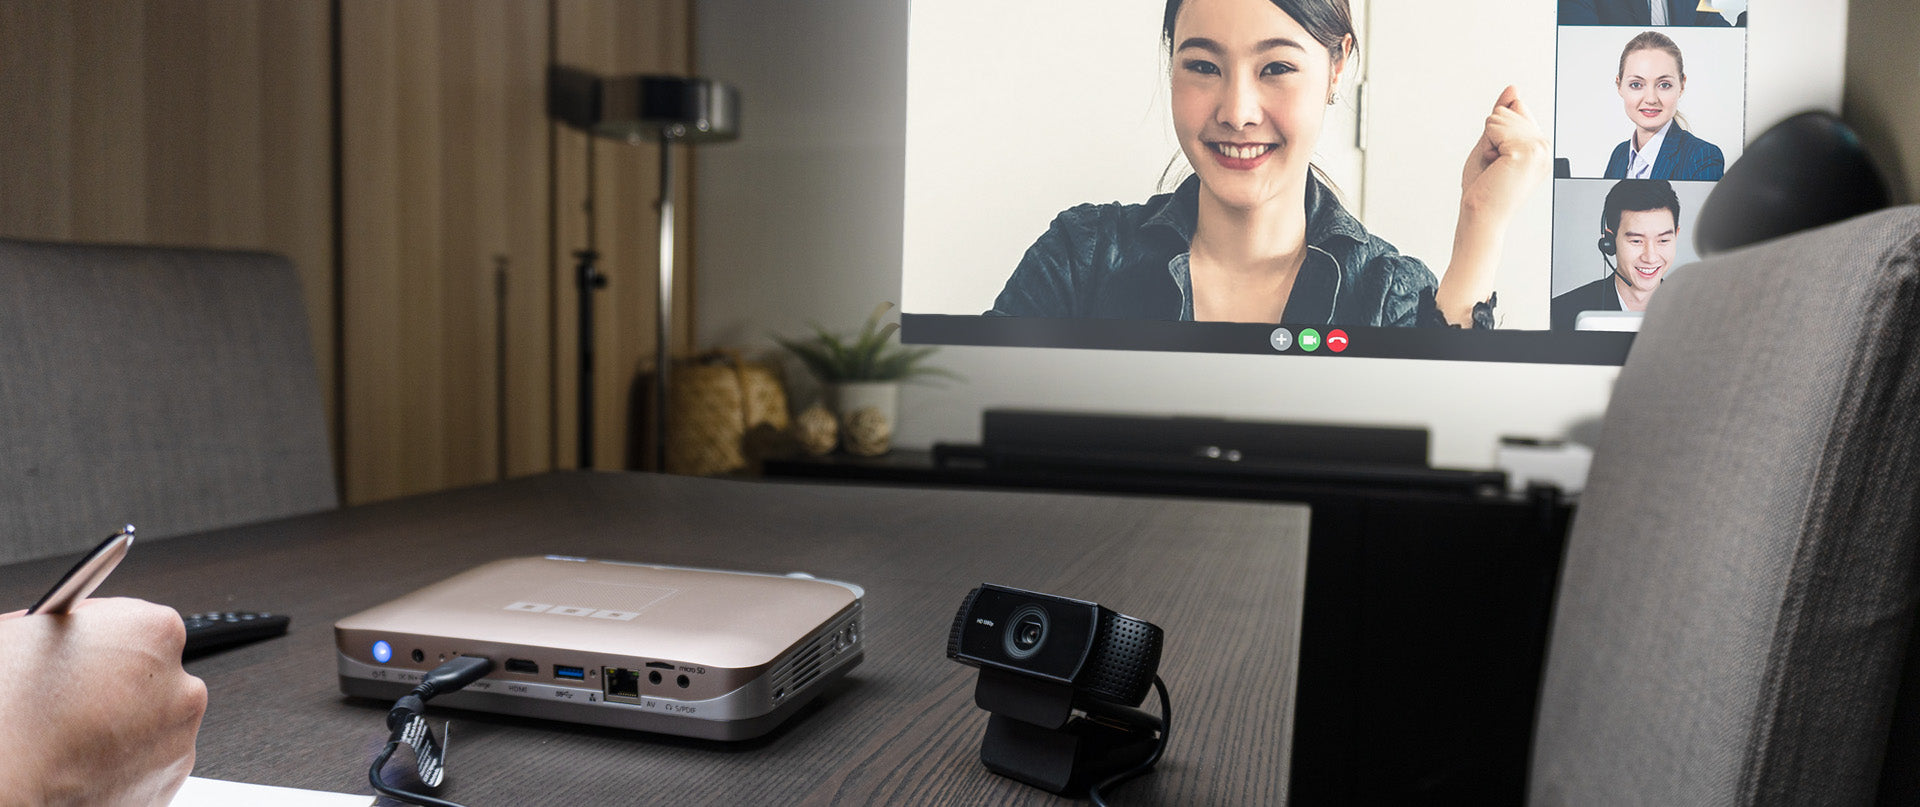 革新的な DS9 4K 短焦点プロジェクター - USB Web カメラ対応